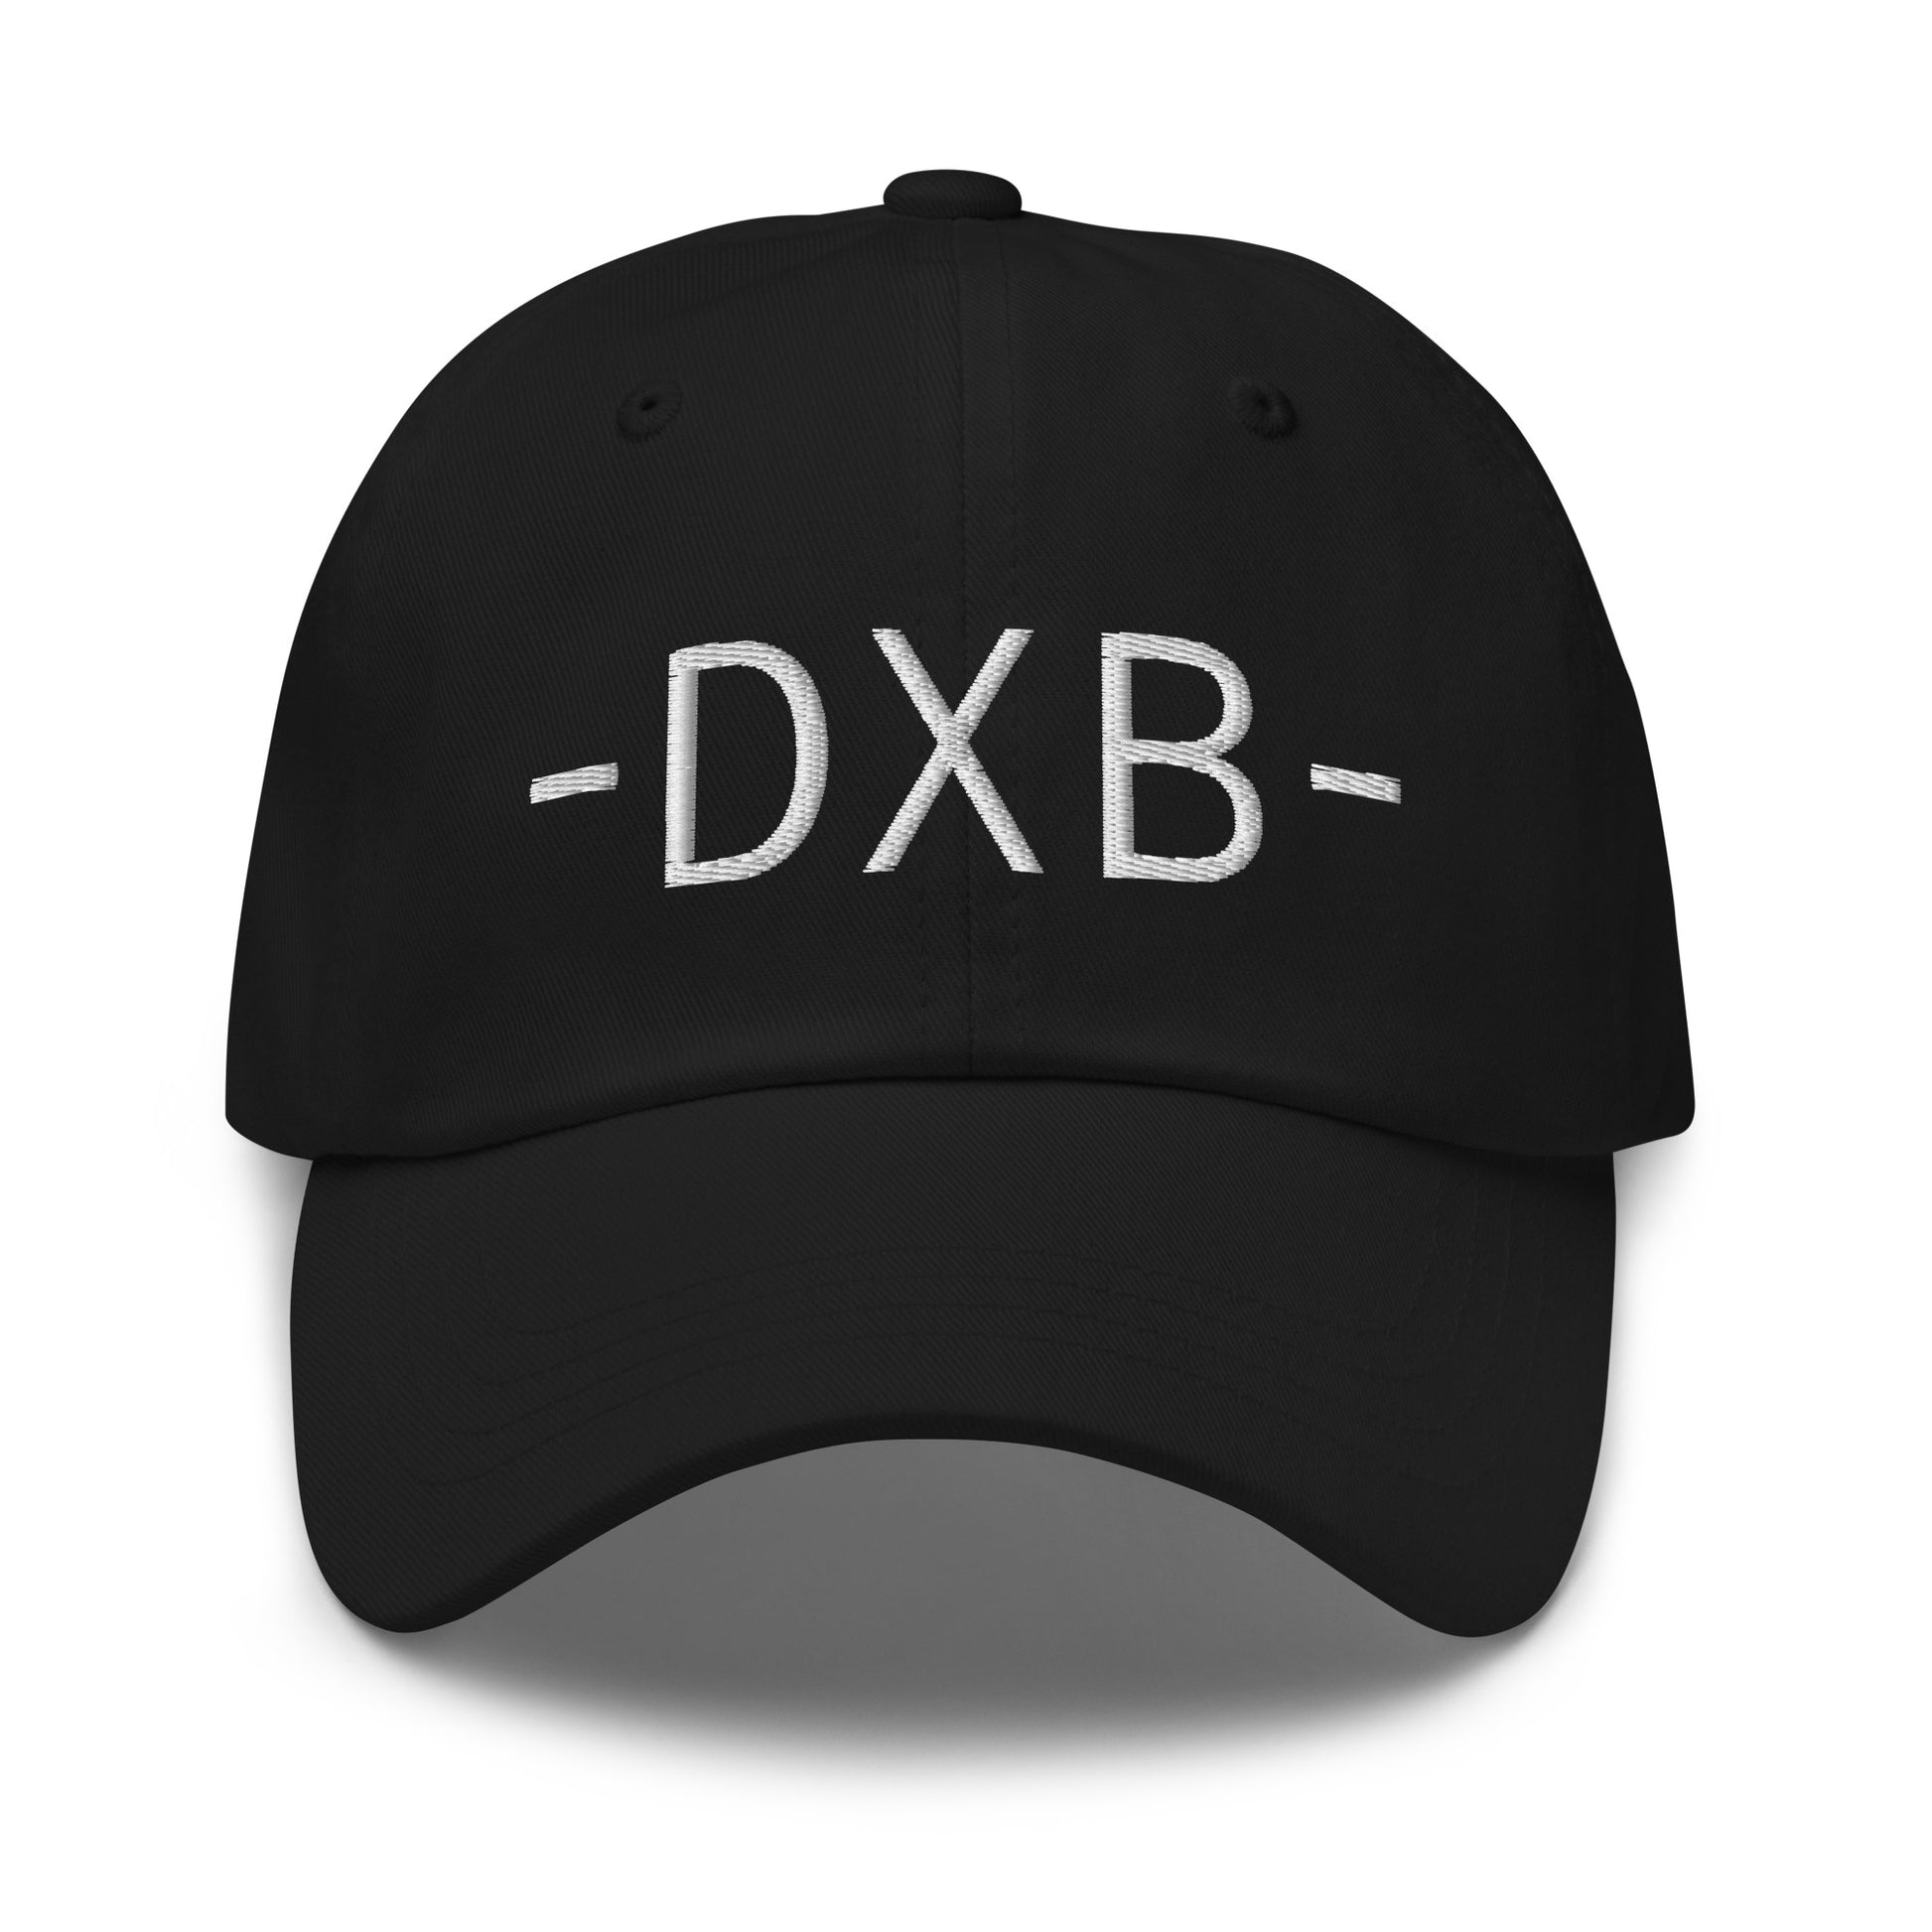 Souvenir Baseball Cap - White • DXB Dubai • YHM Designs - Image 12